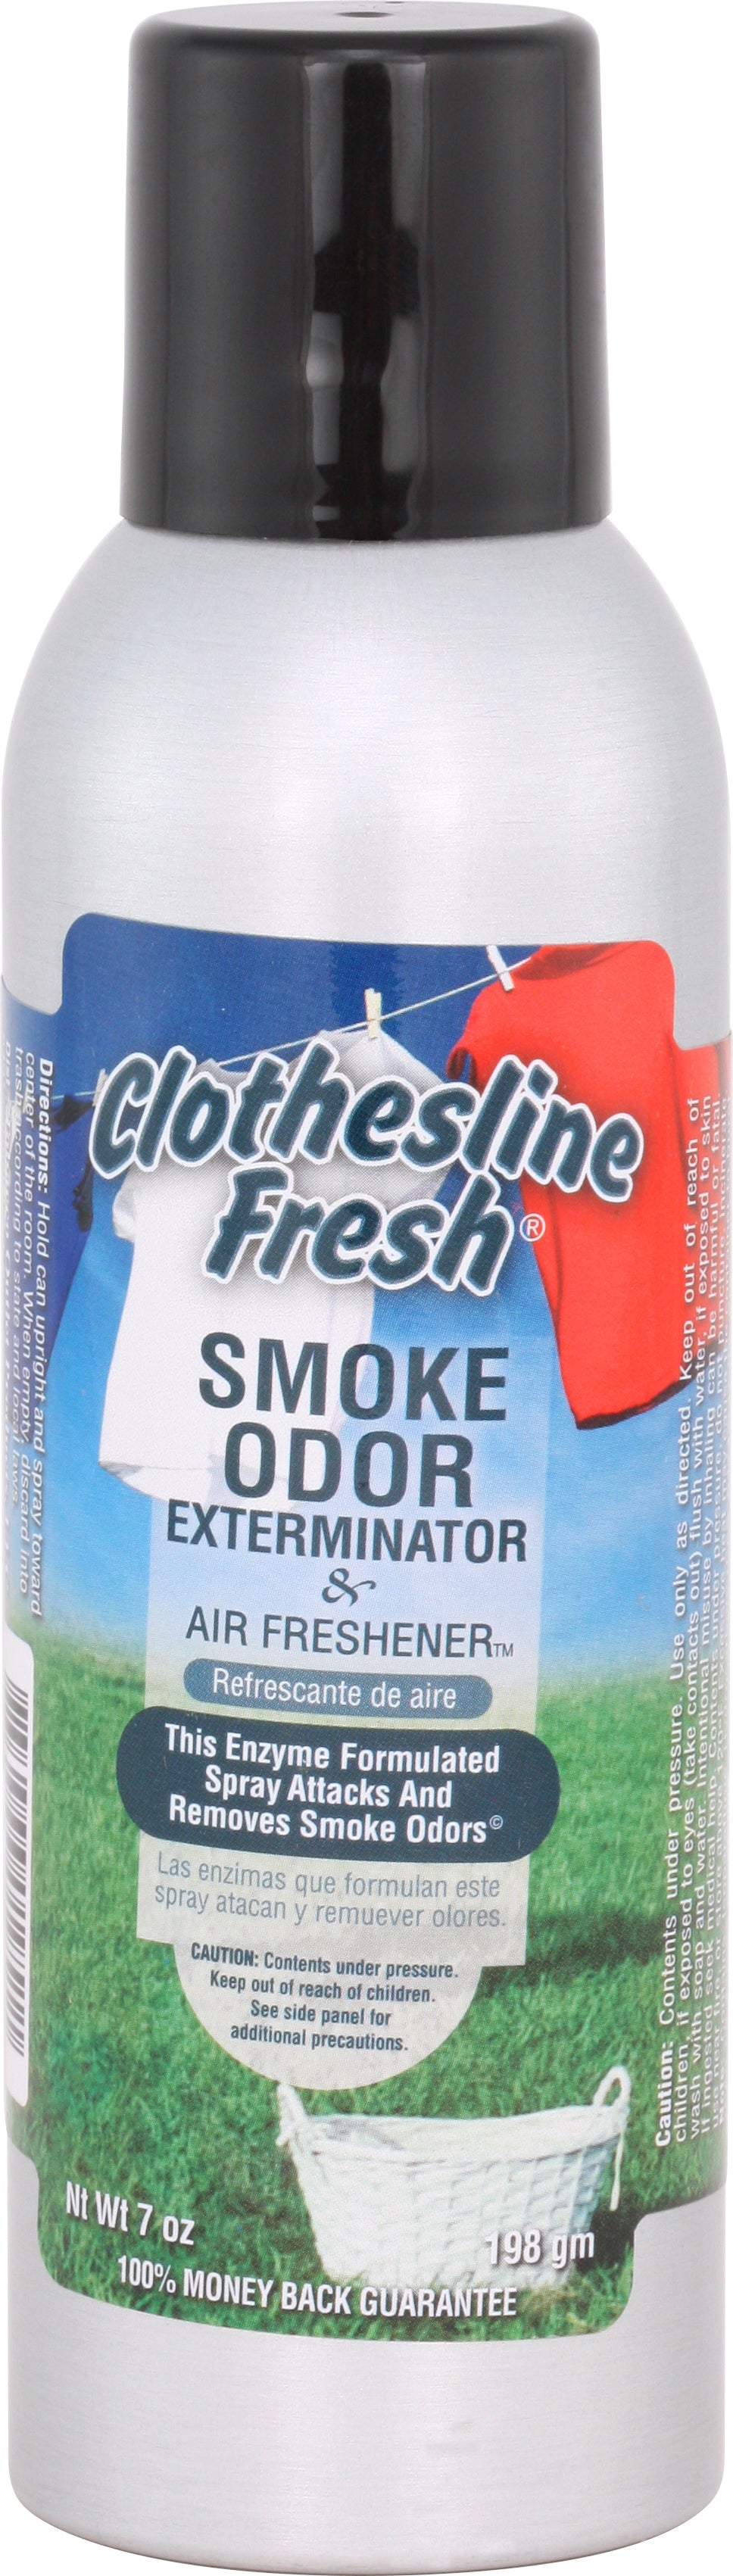 Smoke Odor 7 Oz. Spray: Clothesline Fresh